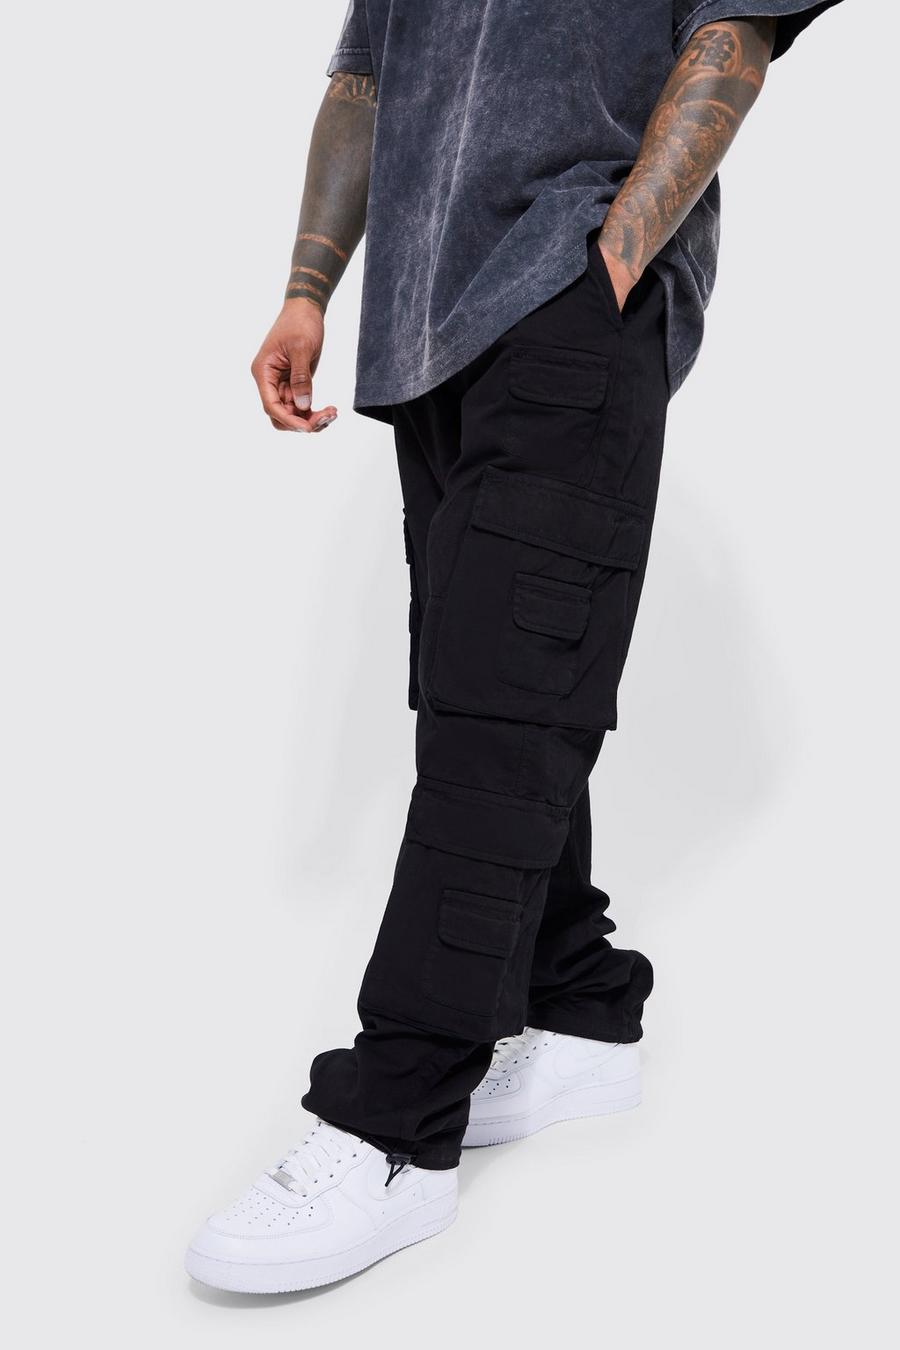 Pantaloni Cargo dritti con vita elasticizzata e tasche Cargo dritte, Black